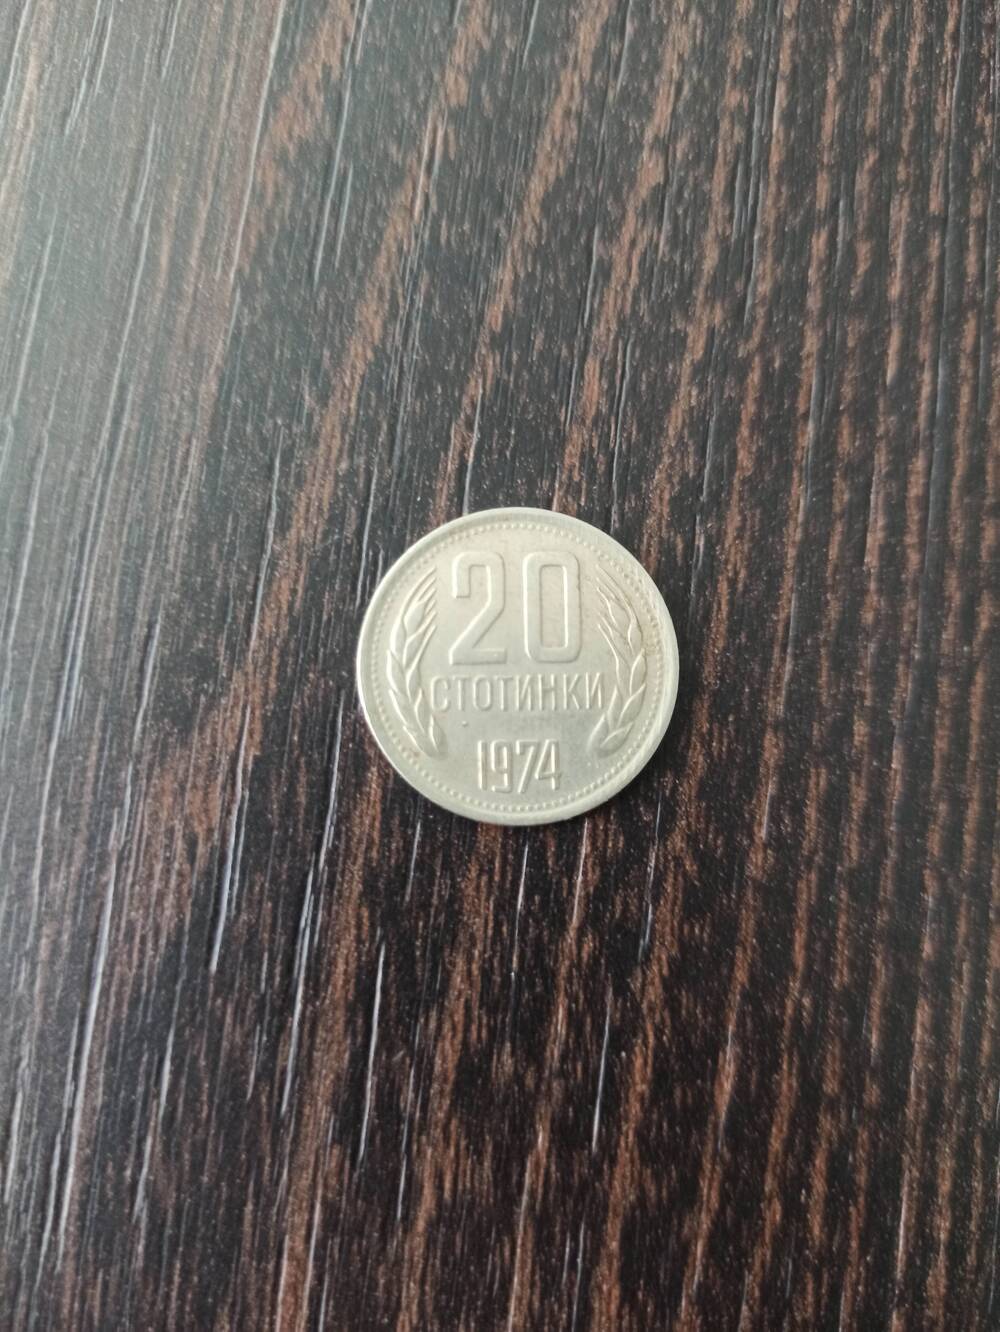 Нумизматика. Монета Болгарии достоинством 20 стотинок 1974 года.